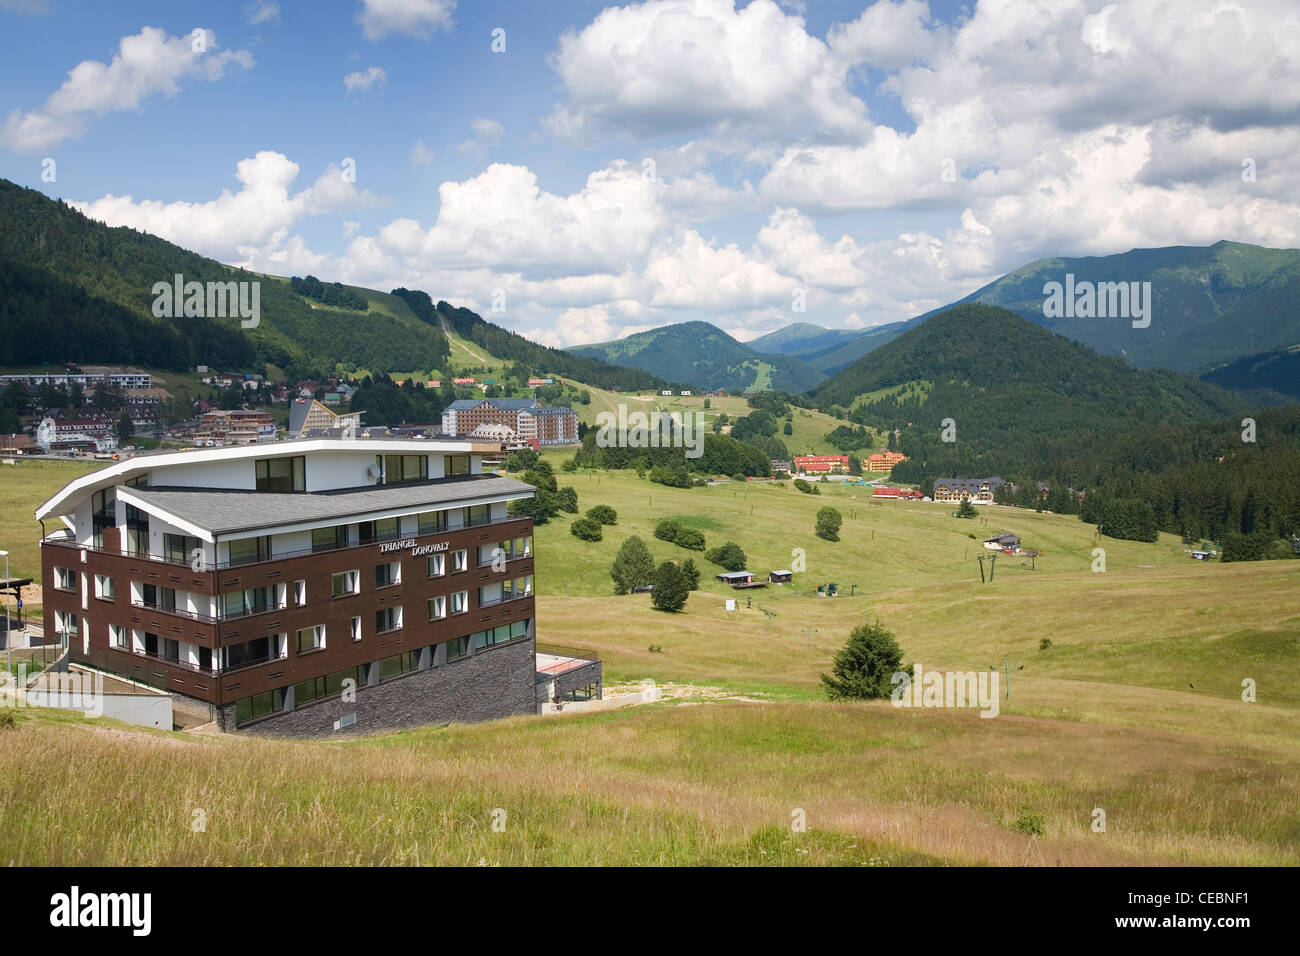 village, Donovaly, Slovakia, Slovak, Republic, landscape Stock Photo